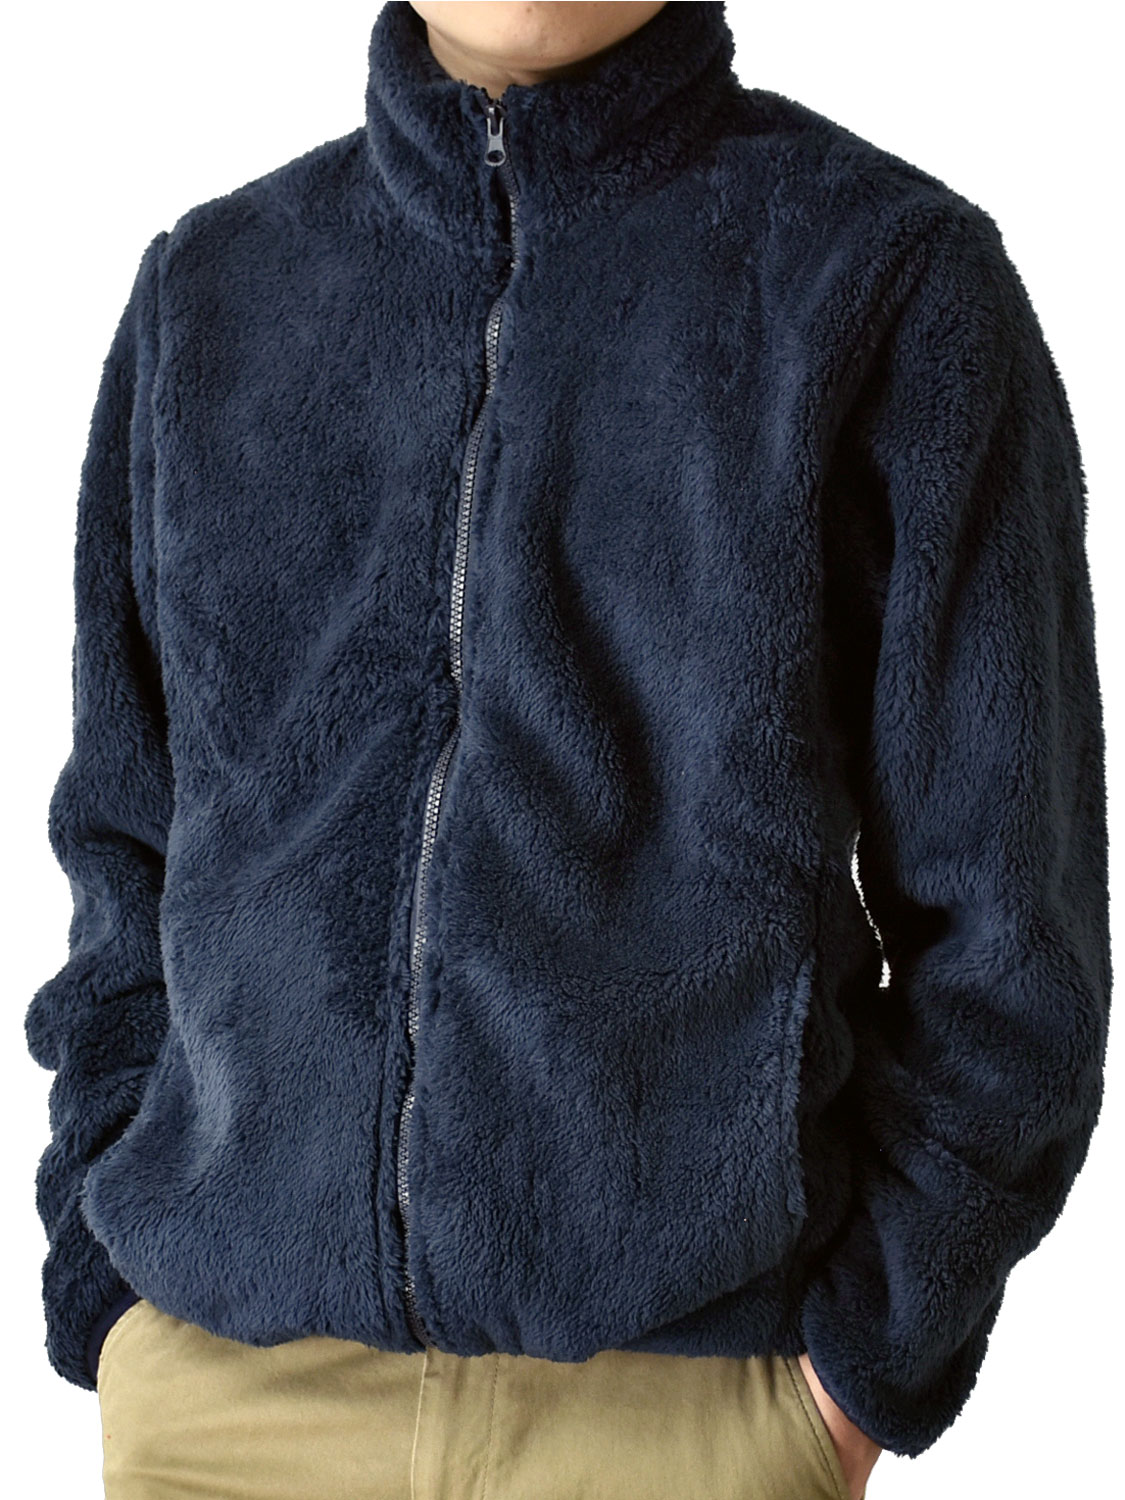 フリースジャケット メンズ ボアフリース フルジップ ファスナー 暖か スタンドカラー 防寒 起毛 裏起毛 送料無料 通販